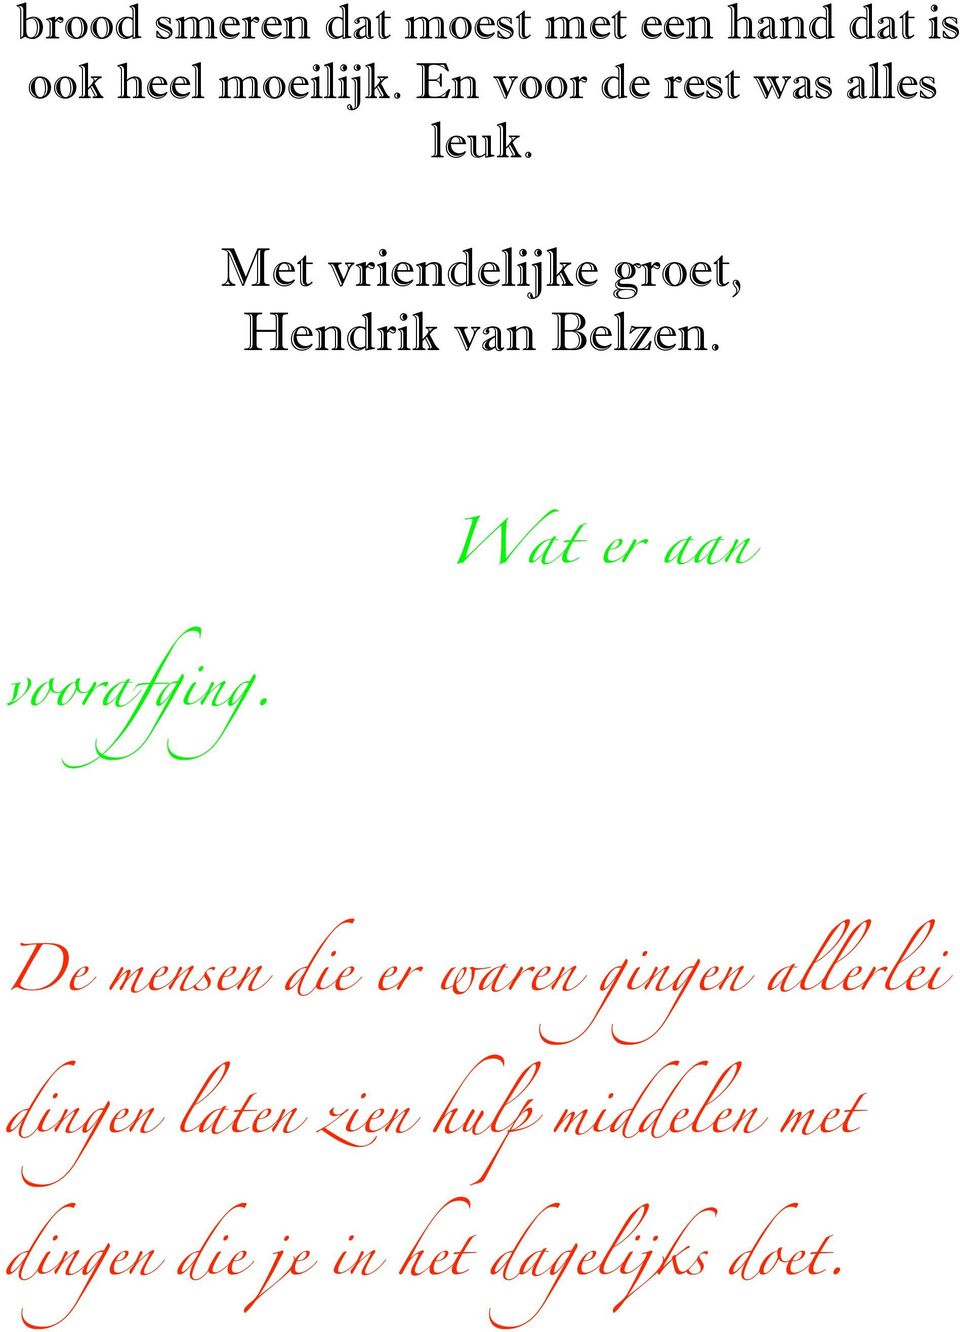 Met vriendelijke groet, Hendrik van Belzen. Wat er aan voorafging.